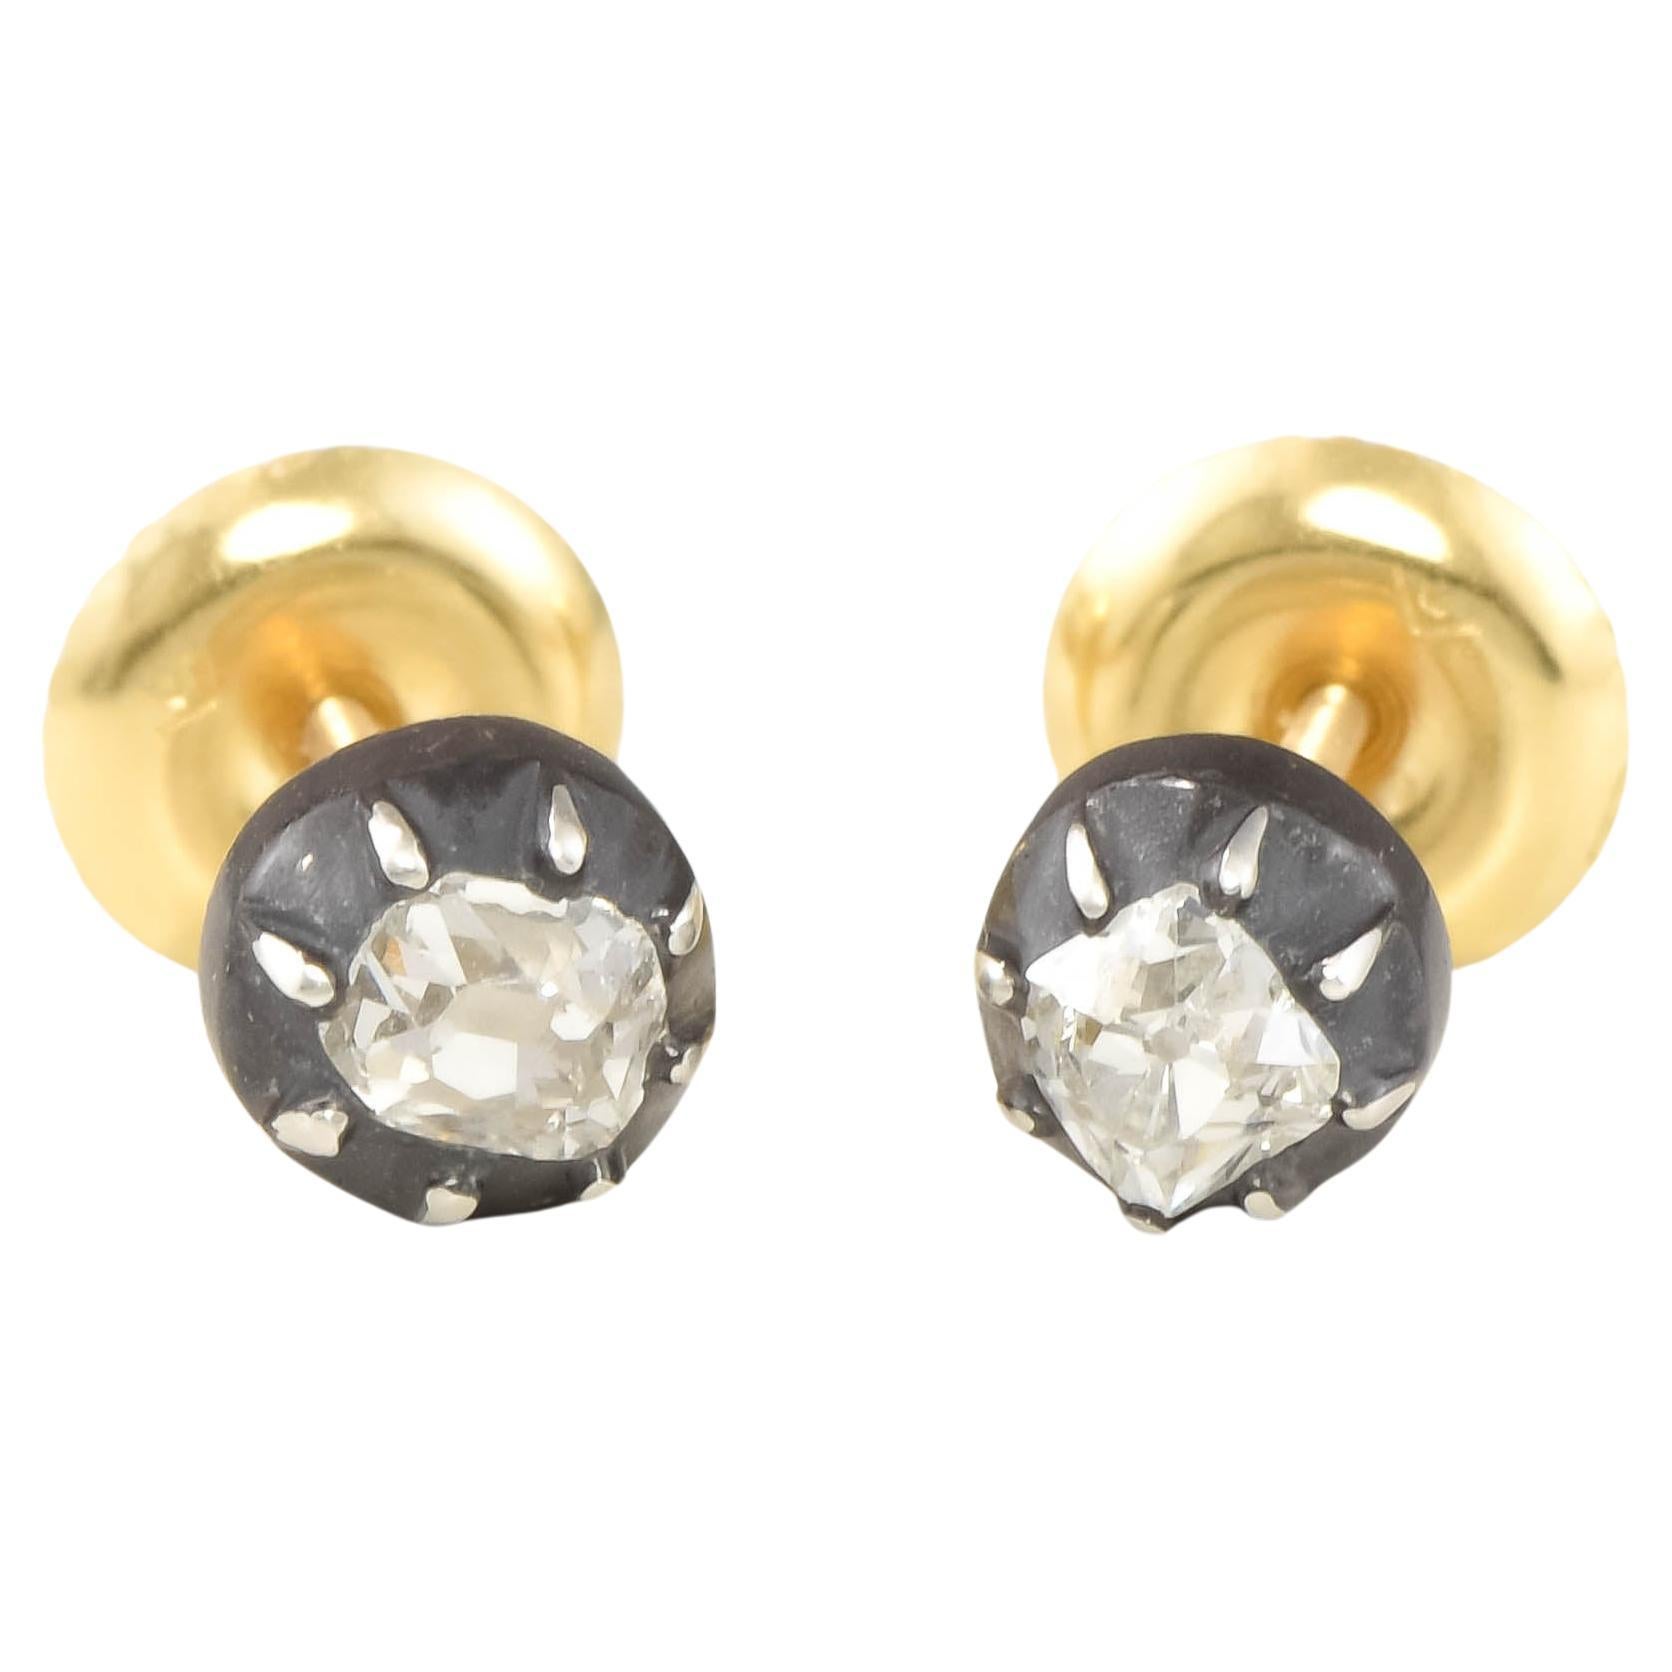 Georgian Old Mine Cut Diamond Stud Earrings in Silver & 18K Gold